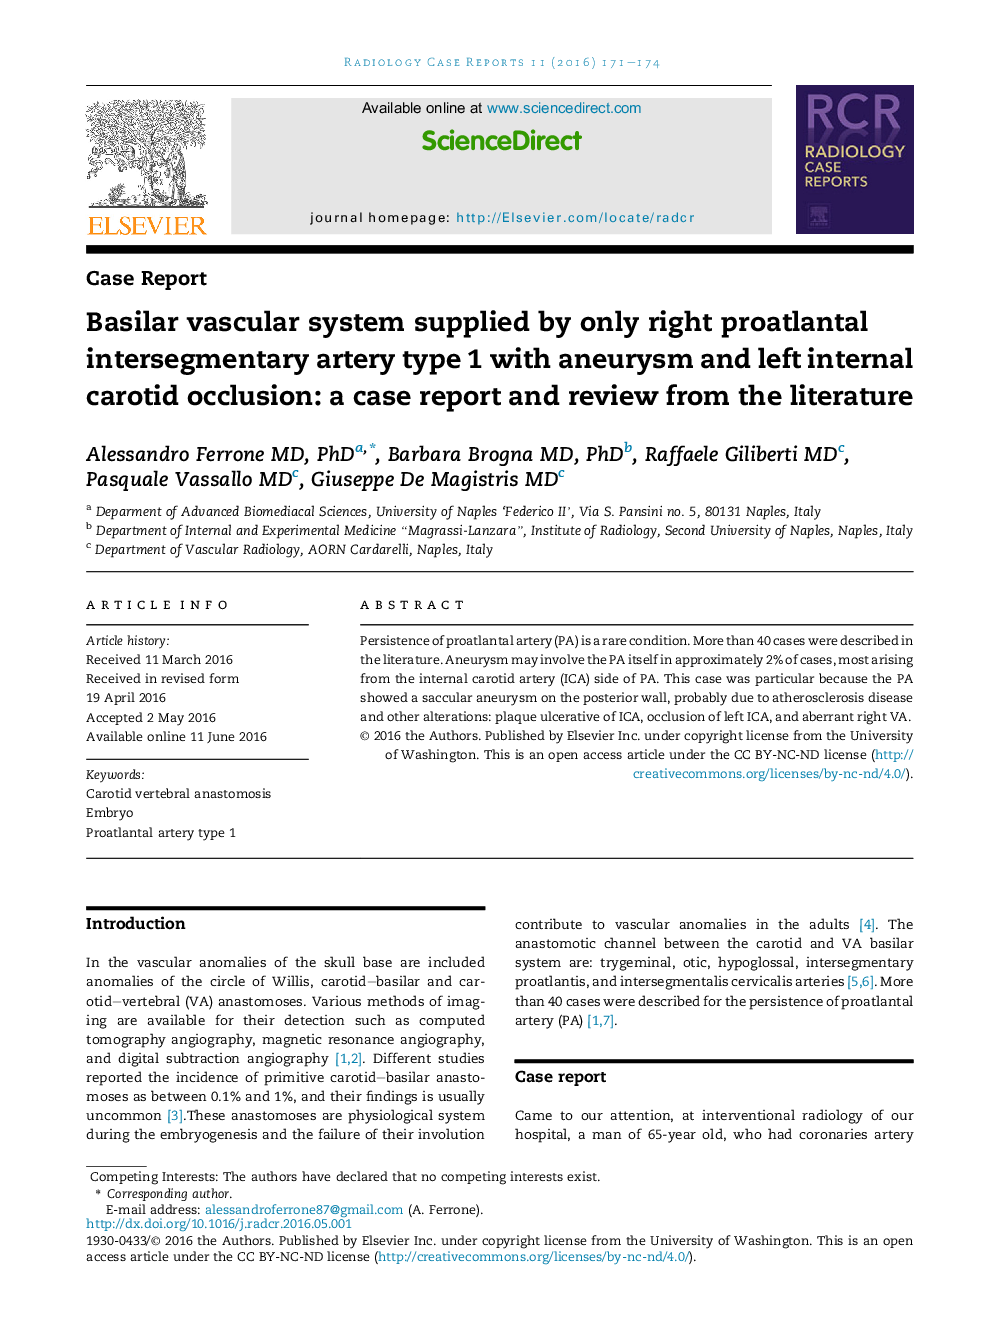 سیستم عروقی بازیلر عرضه شده توسط تنها نوع یک عروق intersegmentary proatlantal راست با آنوریسم و انسداد کاروتید داخلی چپ: گزارش موردی و مرور ادبیات